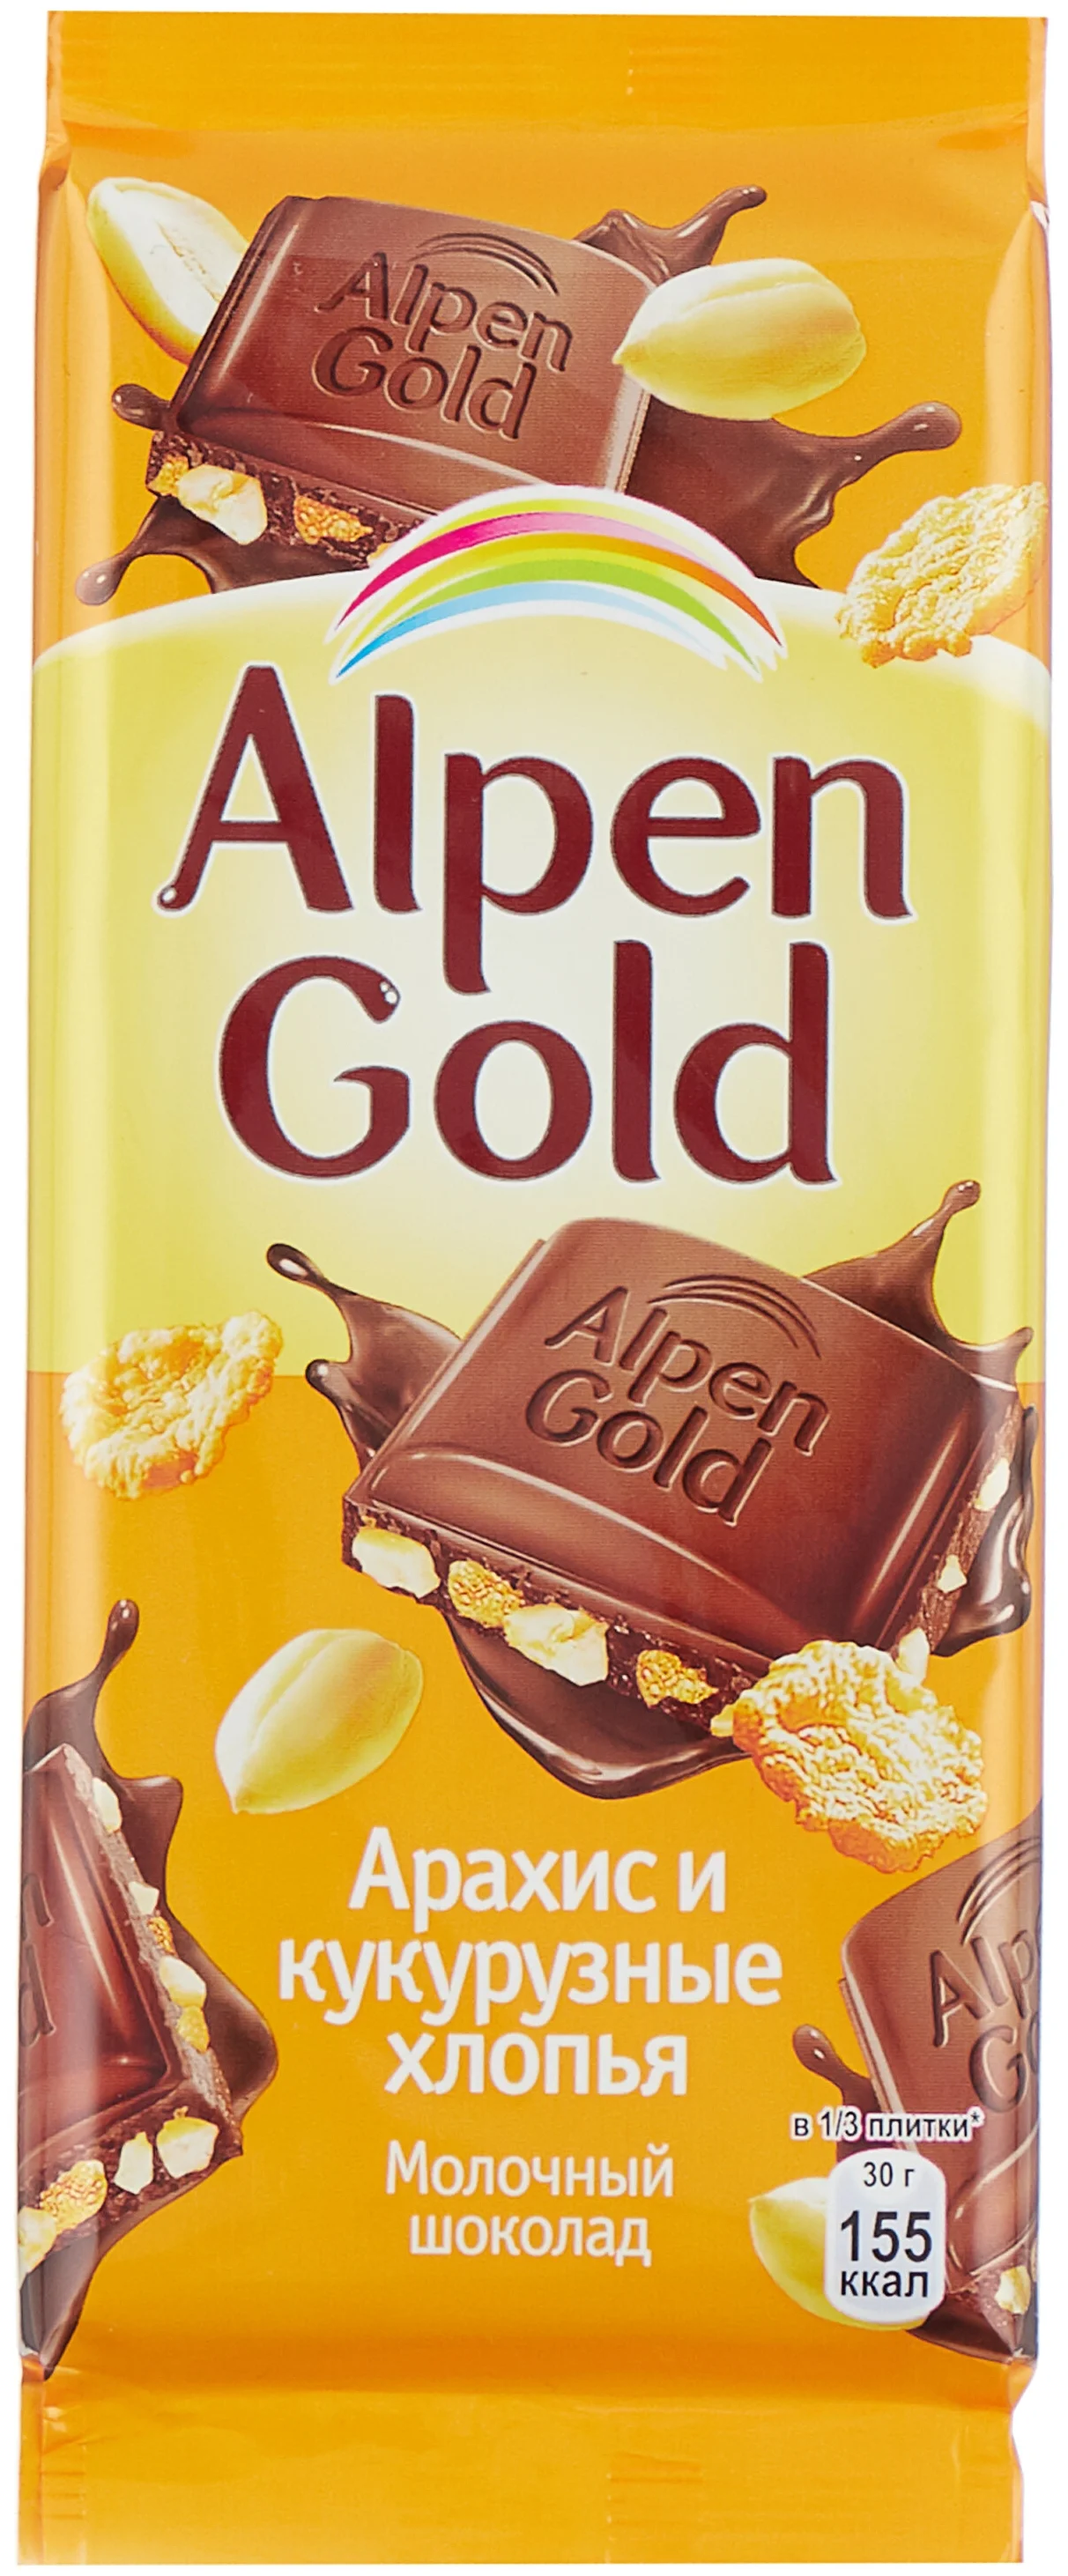  Шоколад Альпен Голд с арахисом и кукурузными хлопьями 85г Покров 